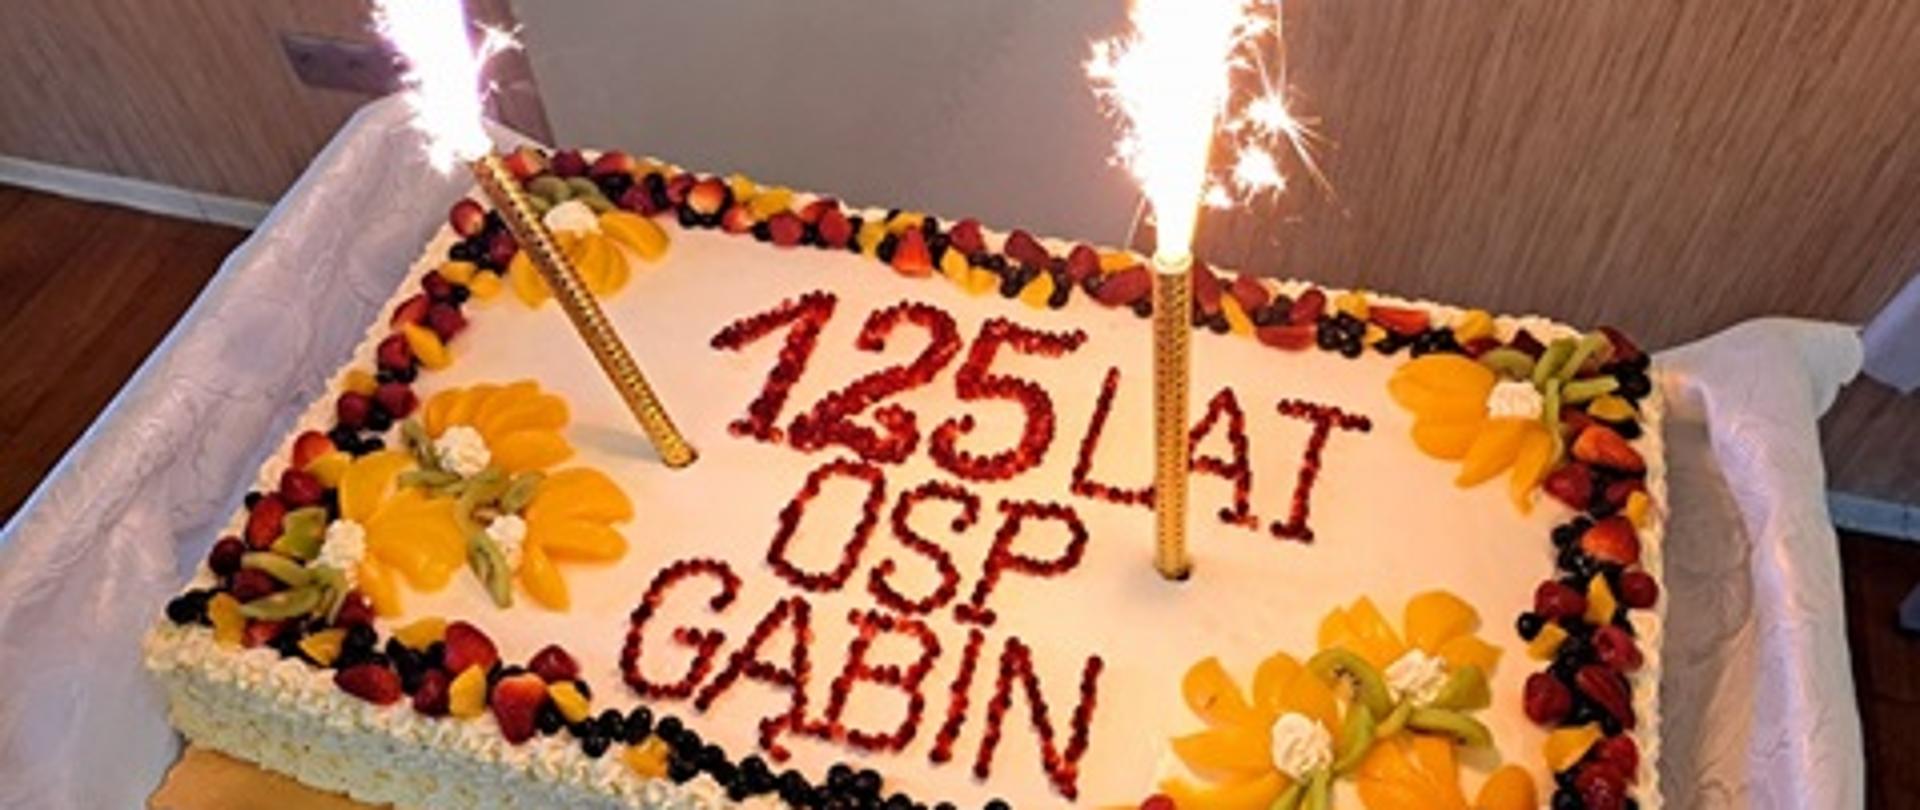 Na zdjęciu widać tort z napisem 125 lat OSP Gąbin